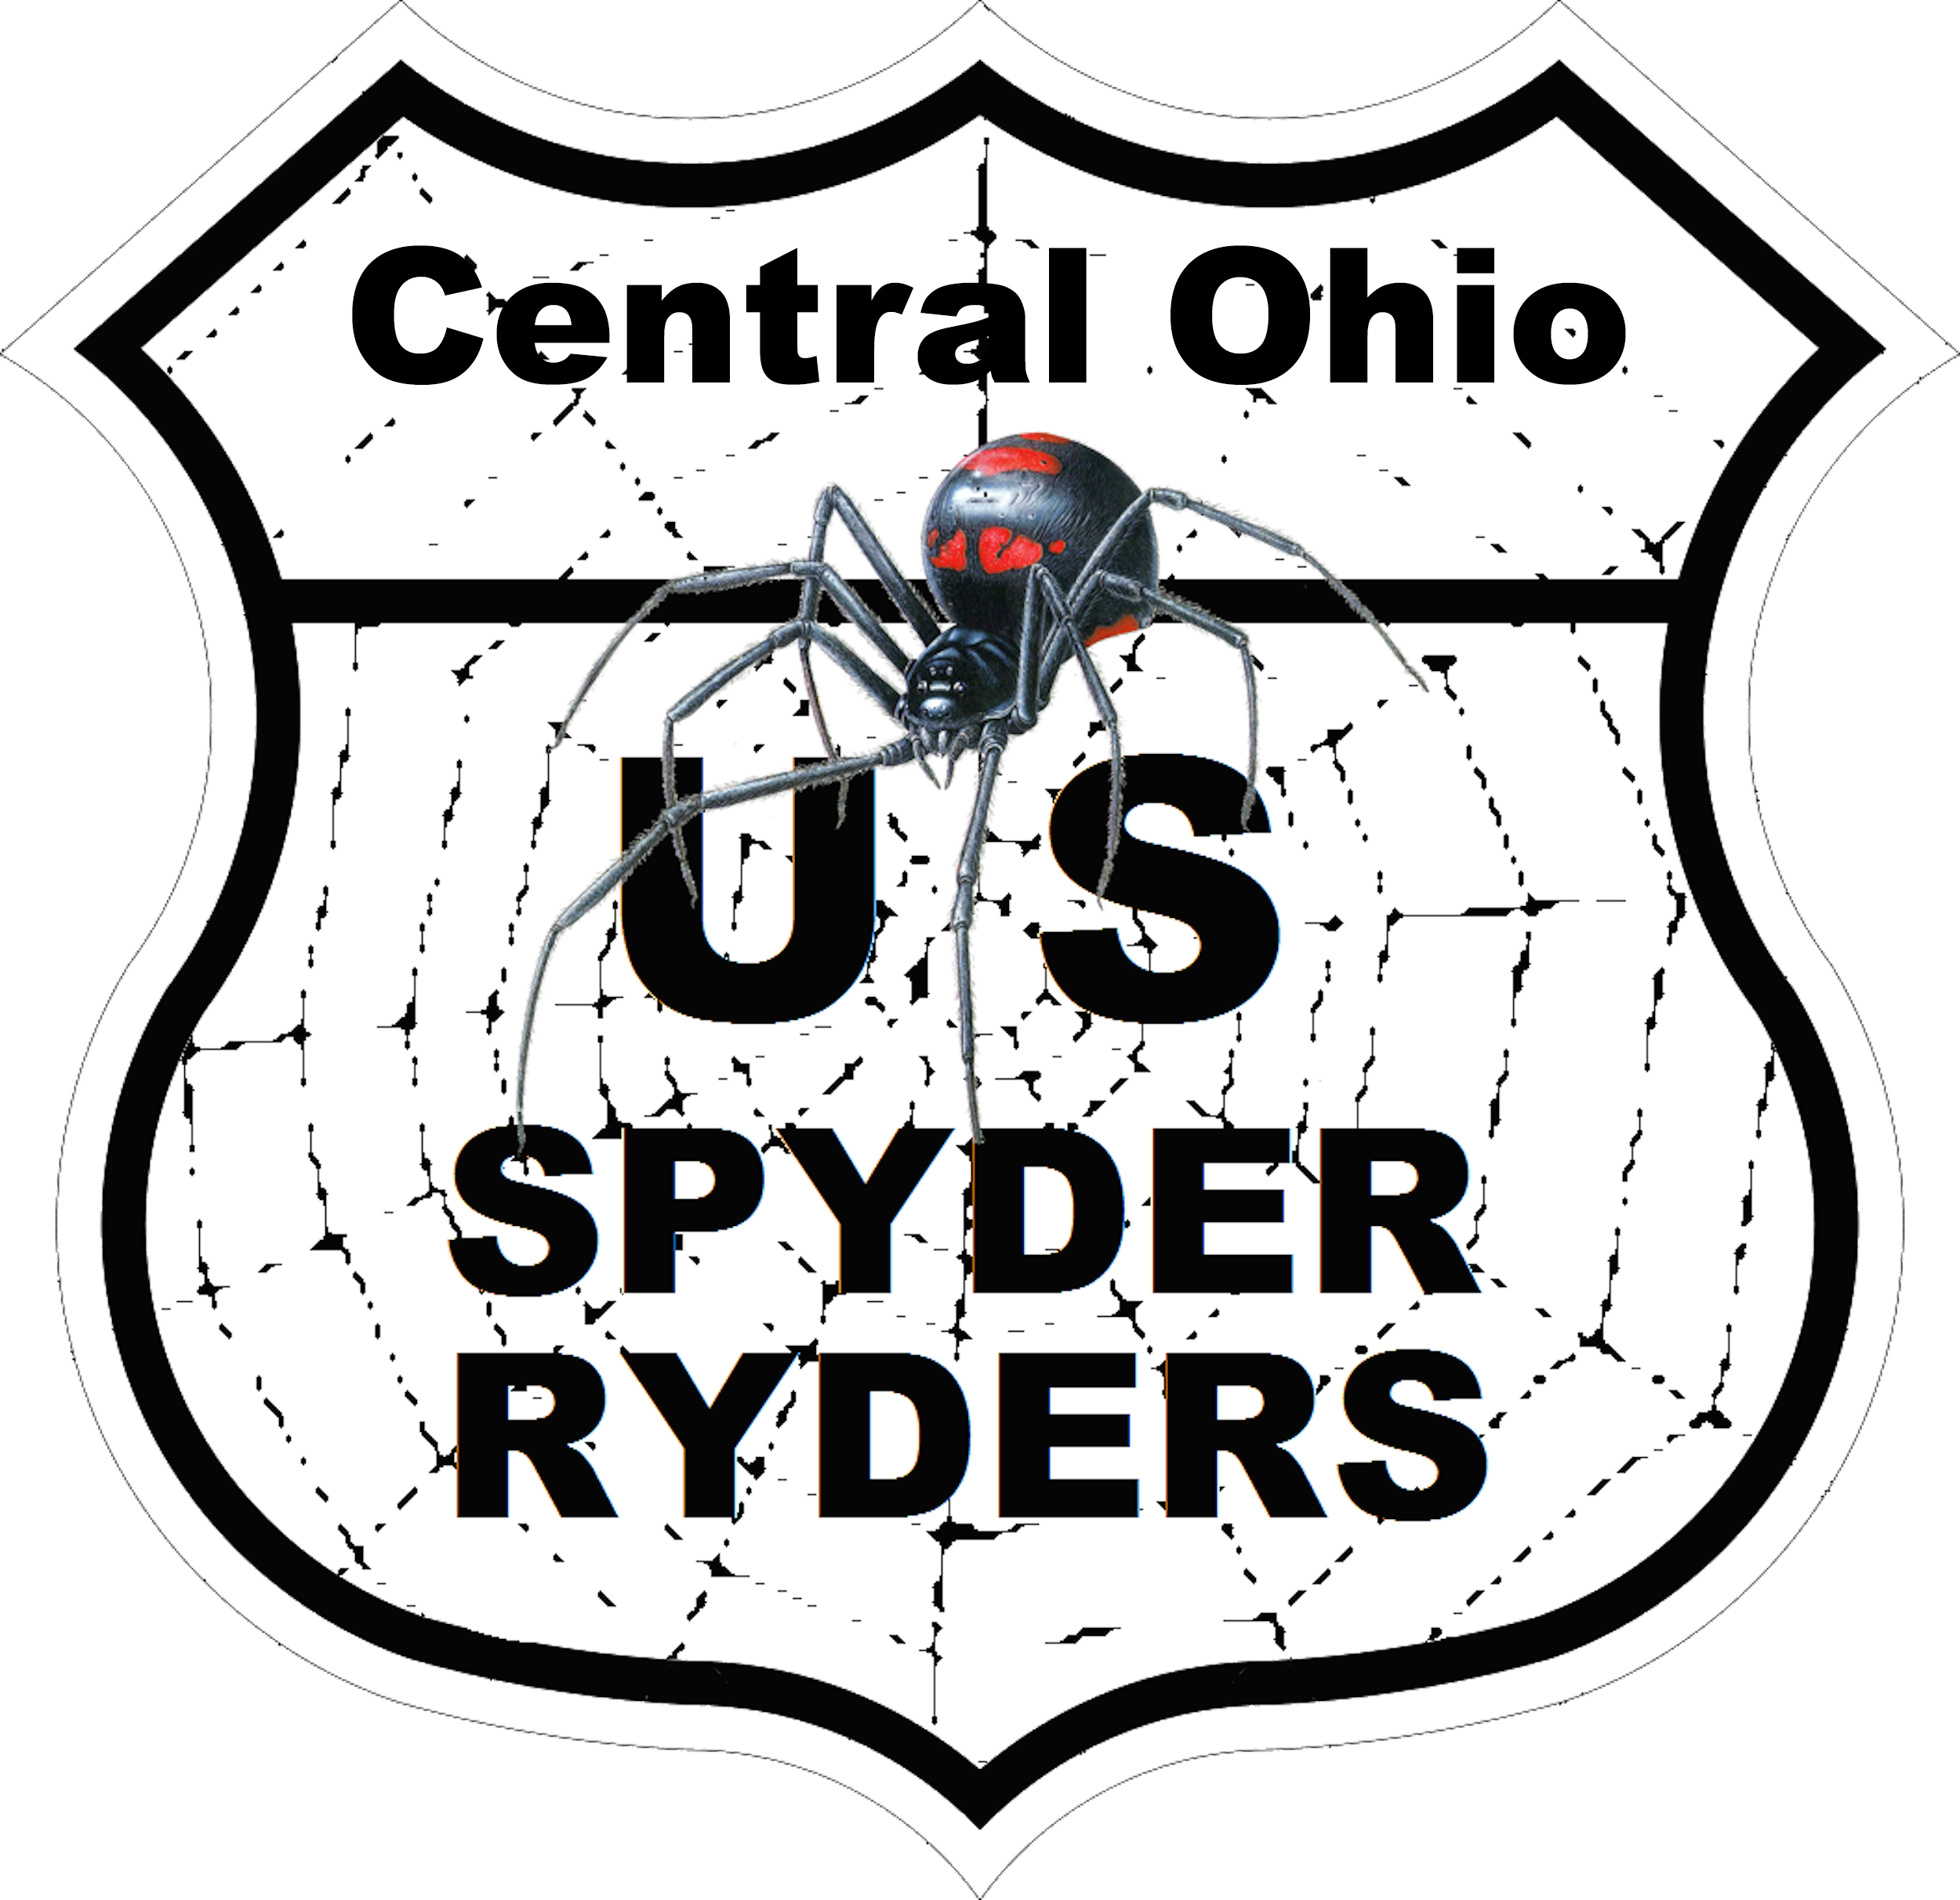 US_Spyder_Ryder_OH_Central Ohio.png